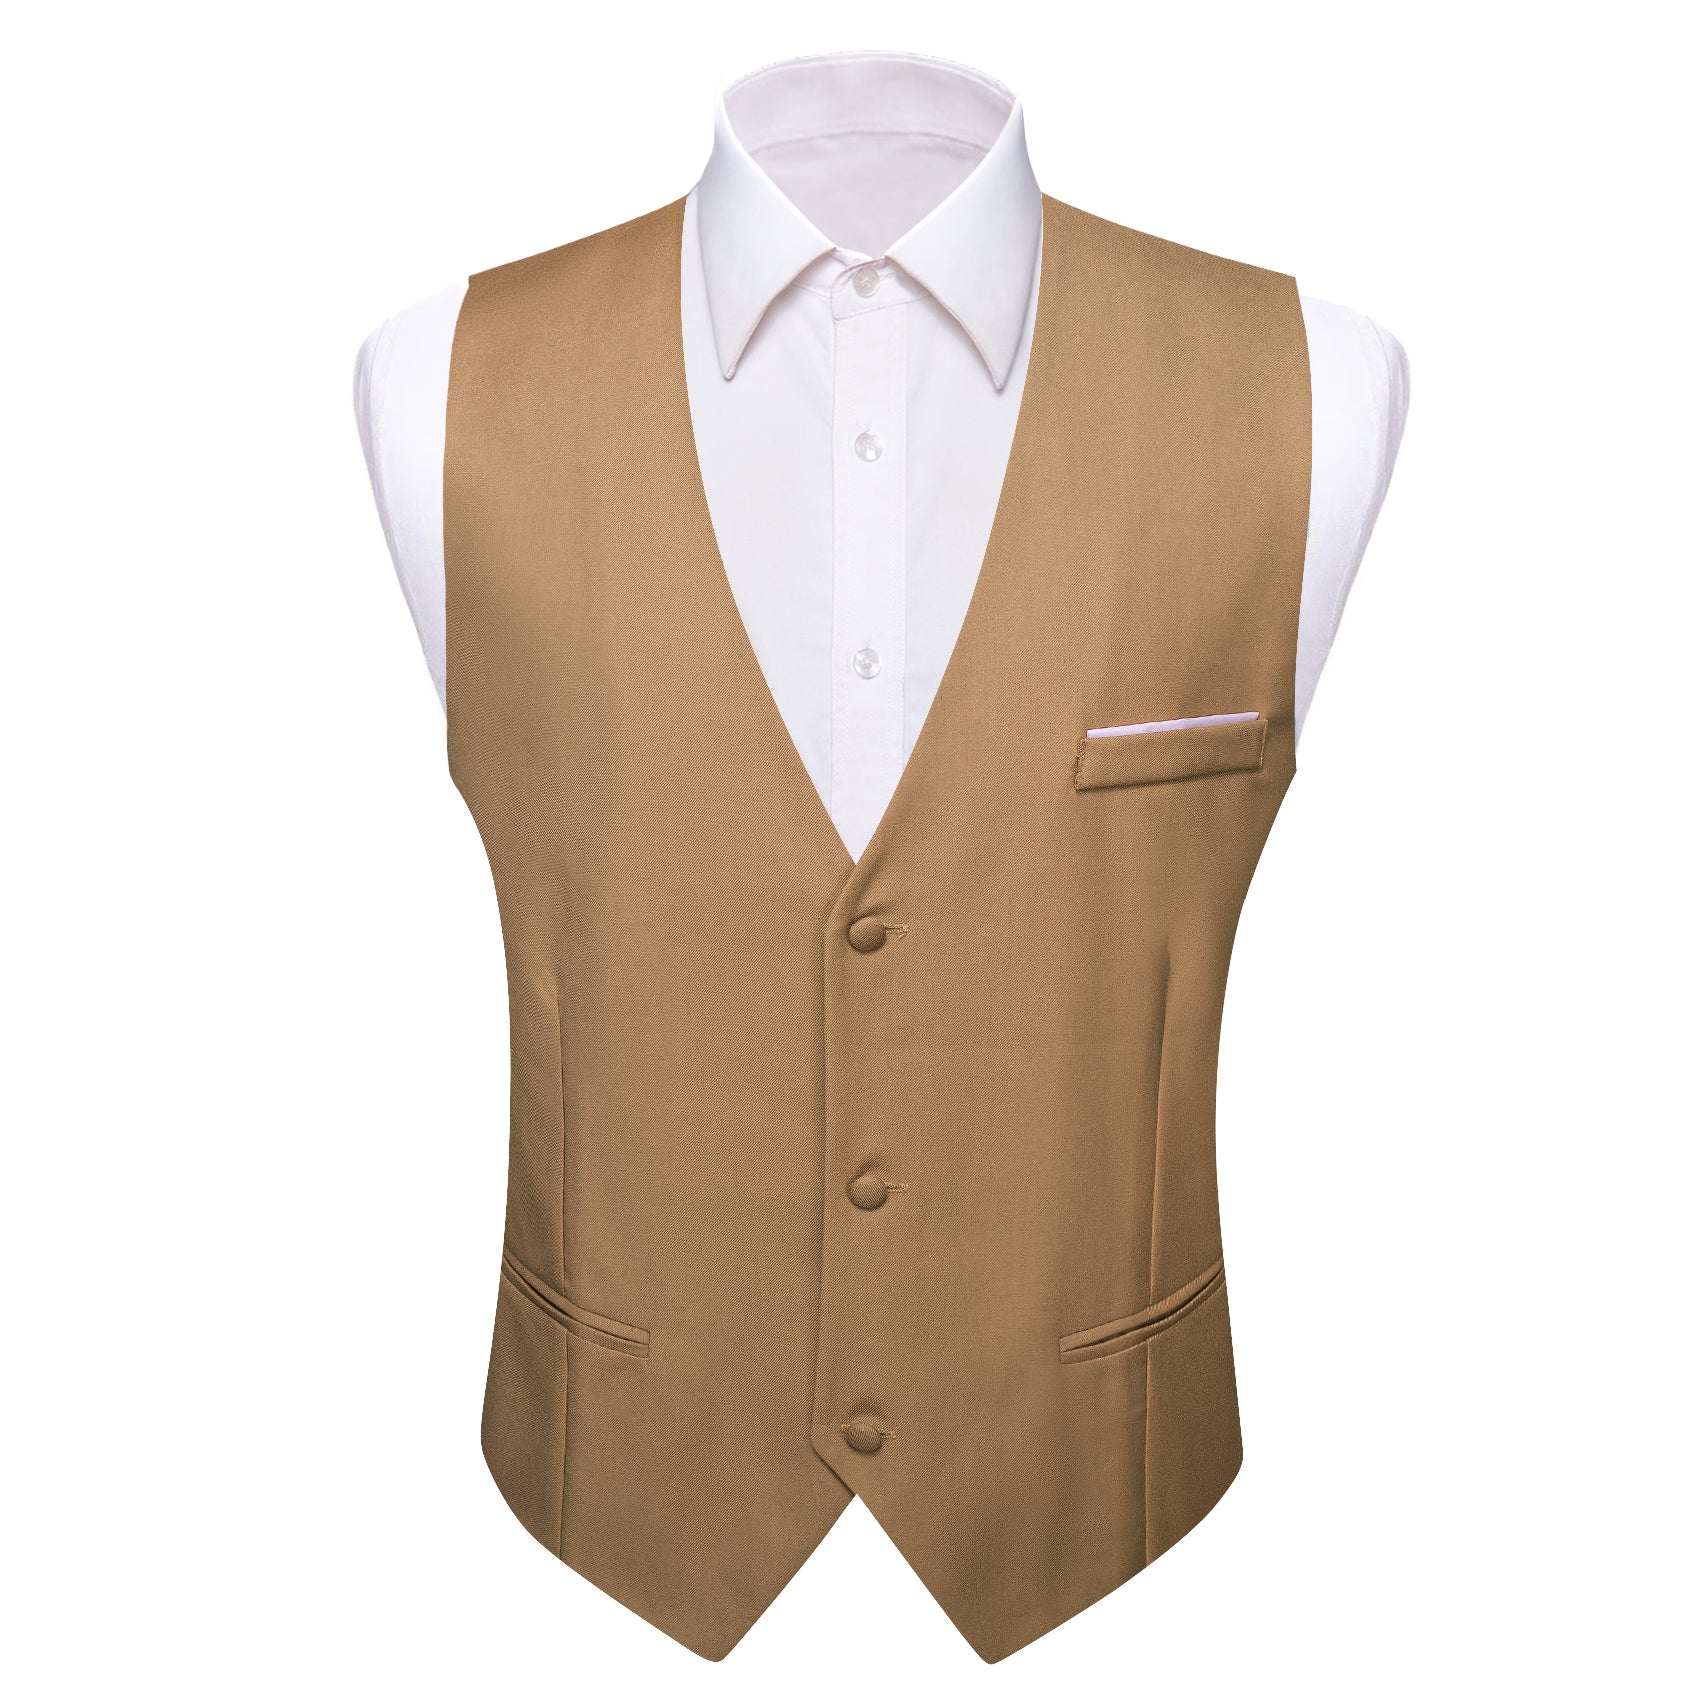 Barry.wang Khaki Solid Business Vest Suit